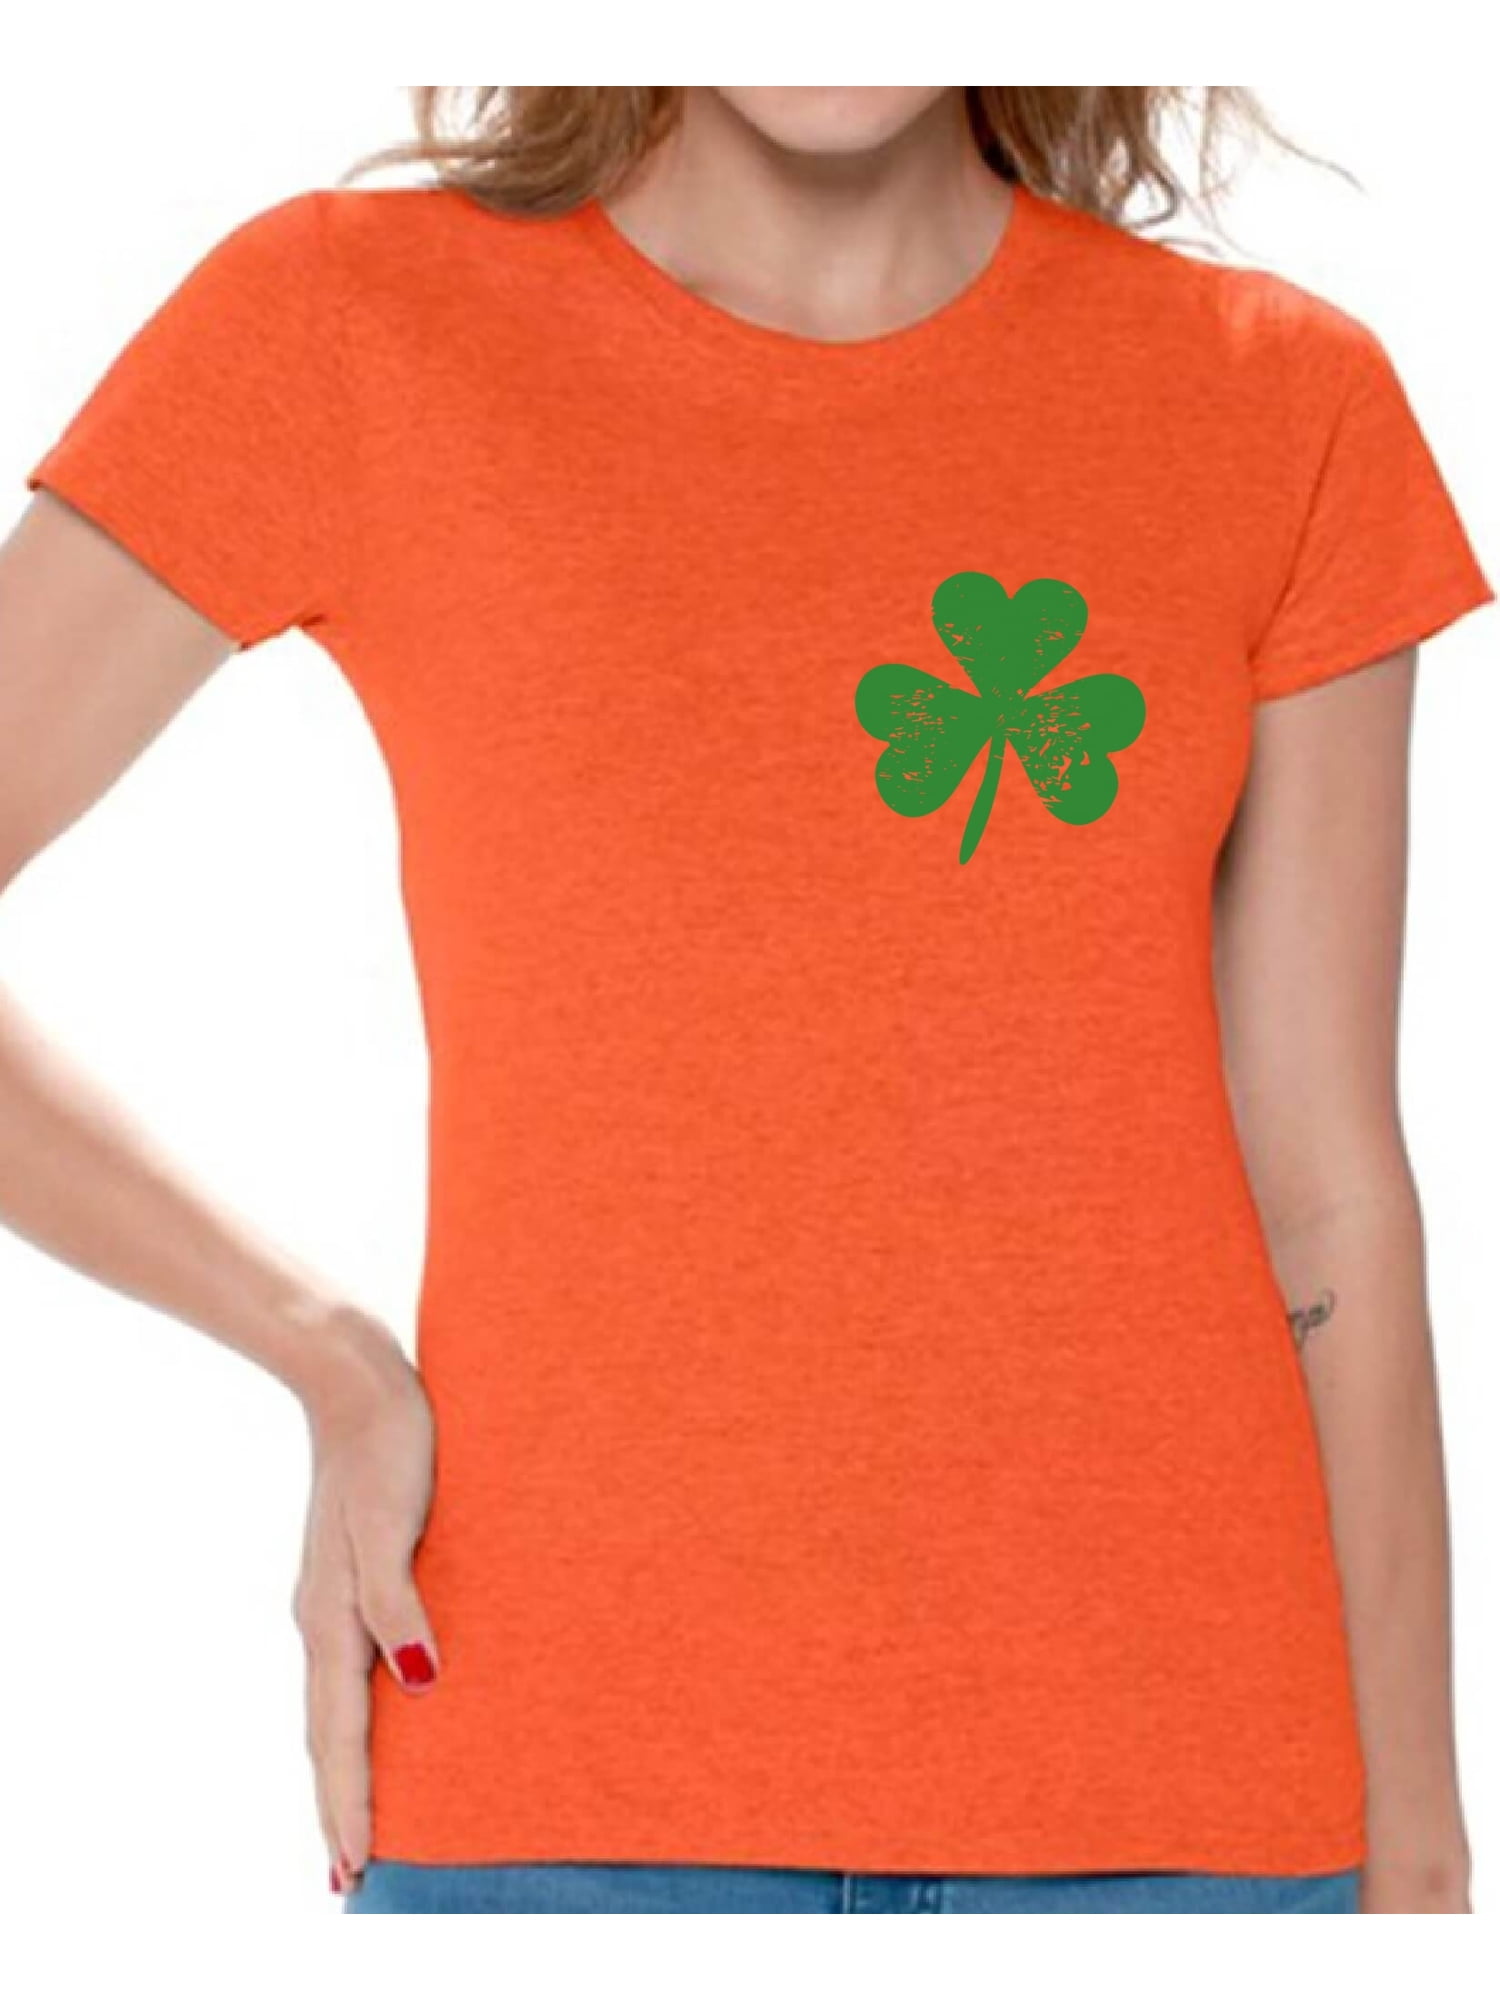 Gift for Irish, Shamrocks and Shenanigans Party Tshirt Lucky Irish Tee St Patrick's Day Shirt Green St Paddy's Shirt Green Irish Truck